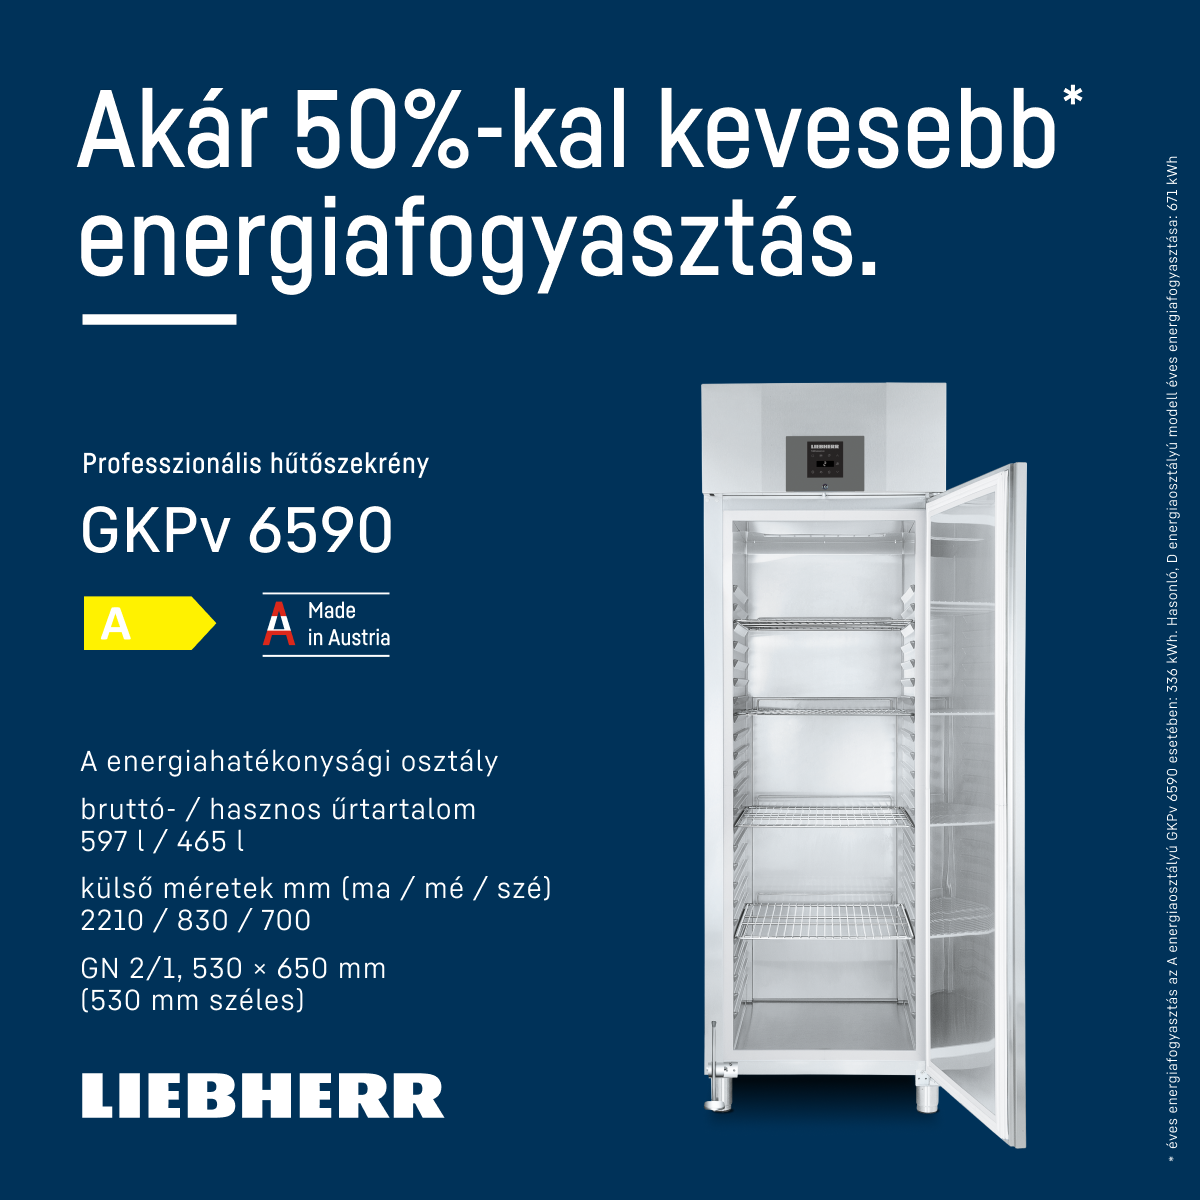 Az energiahatékonyság legfontosabb  érv professzionális Liebherr készülékek esetében.